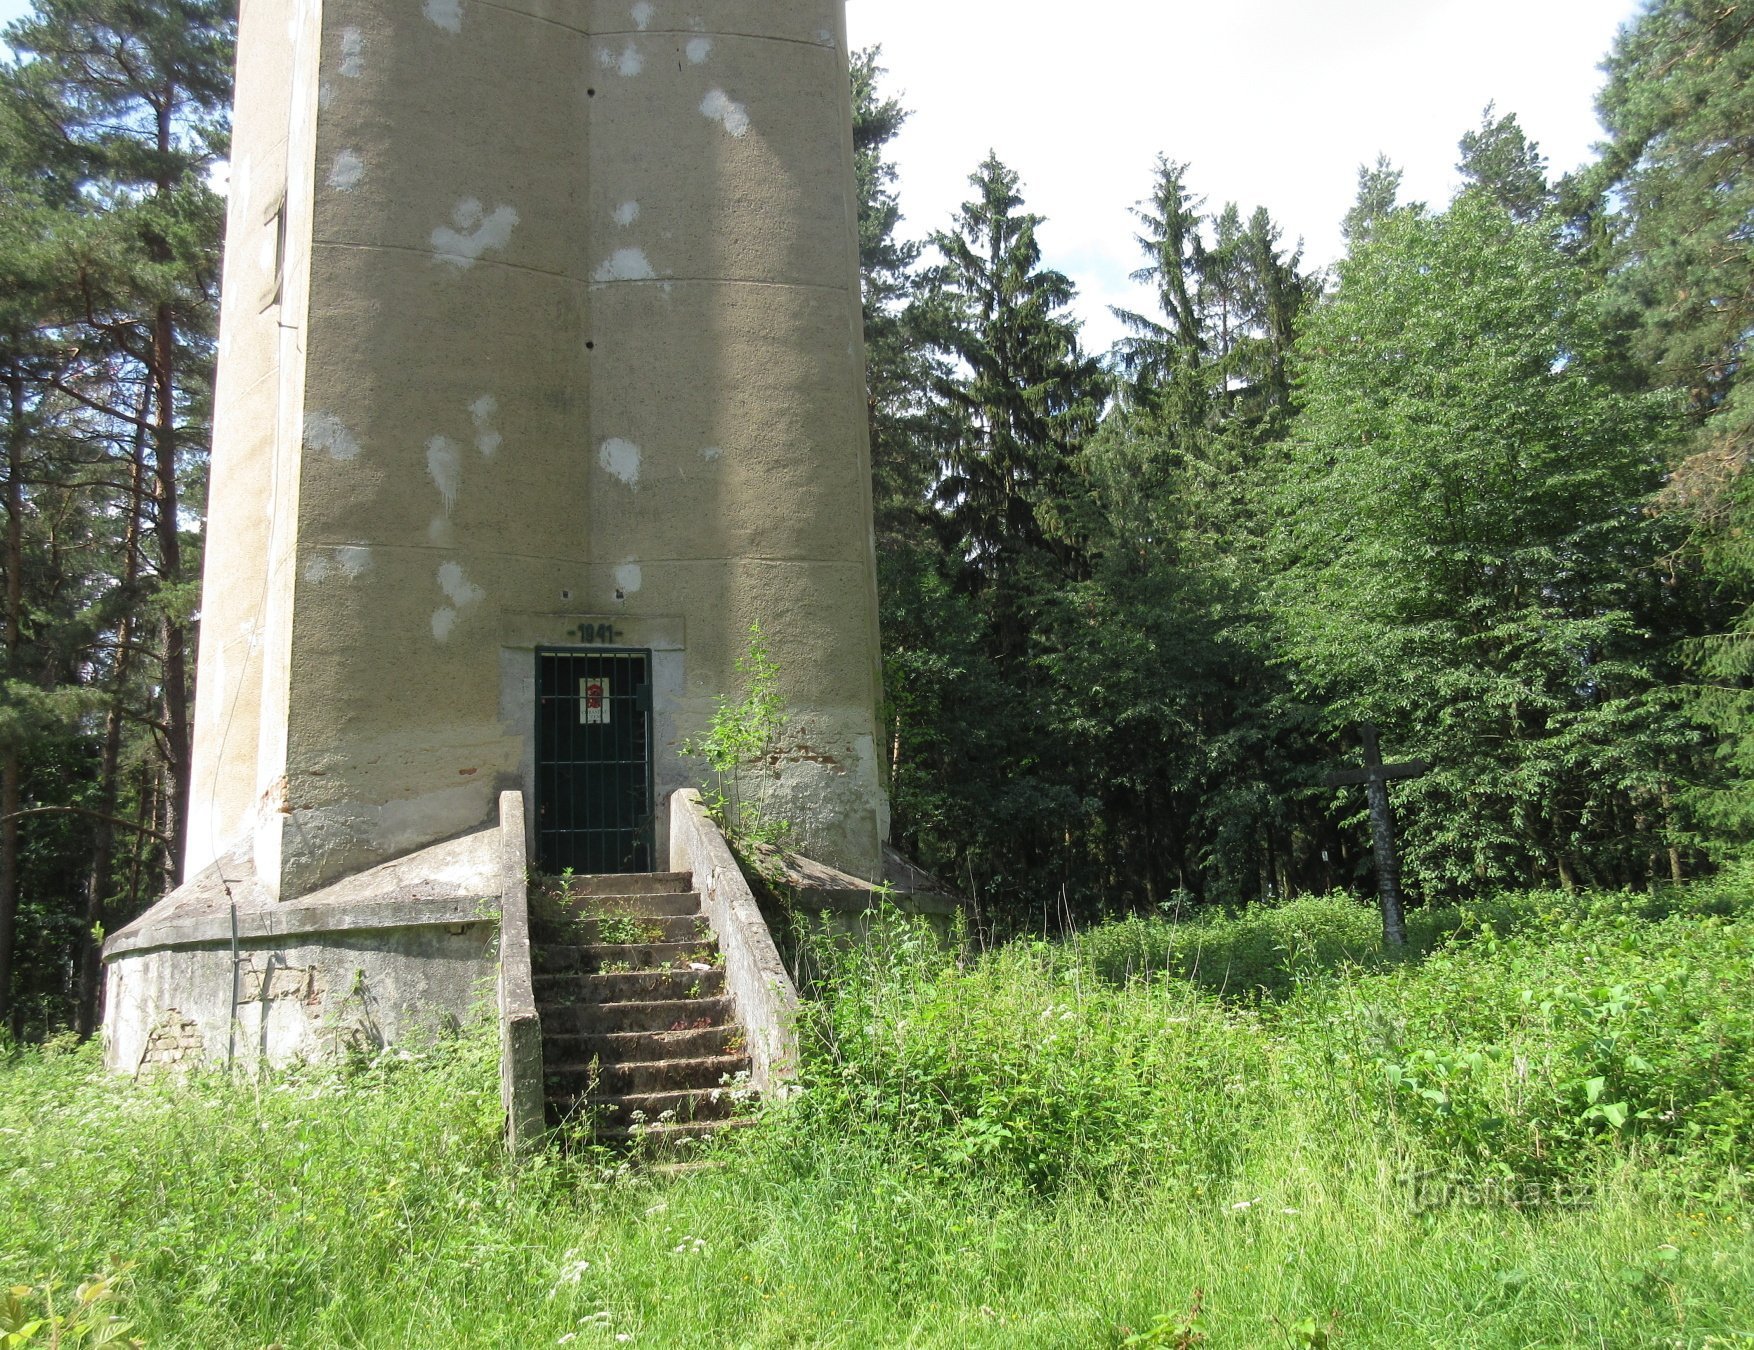 Surveyor's Tower - Koňský vrch observation tower